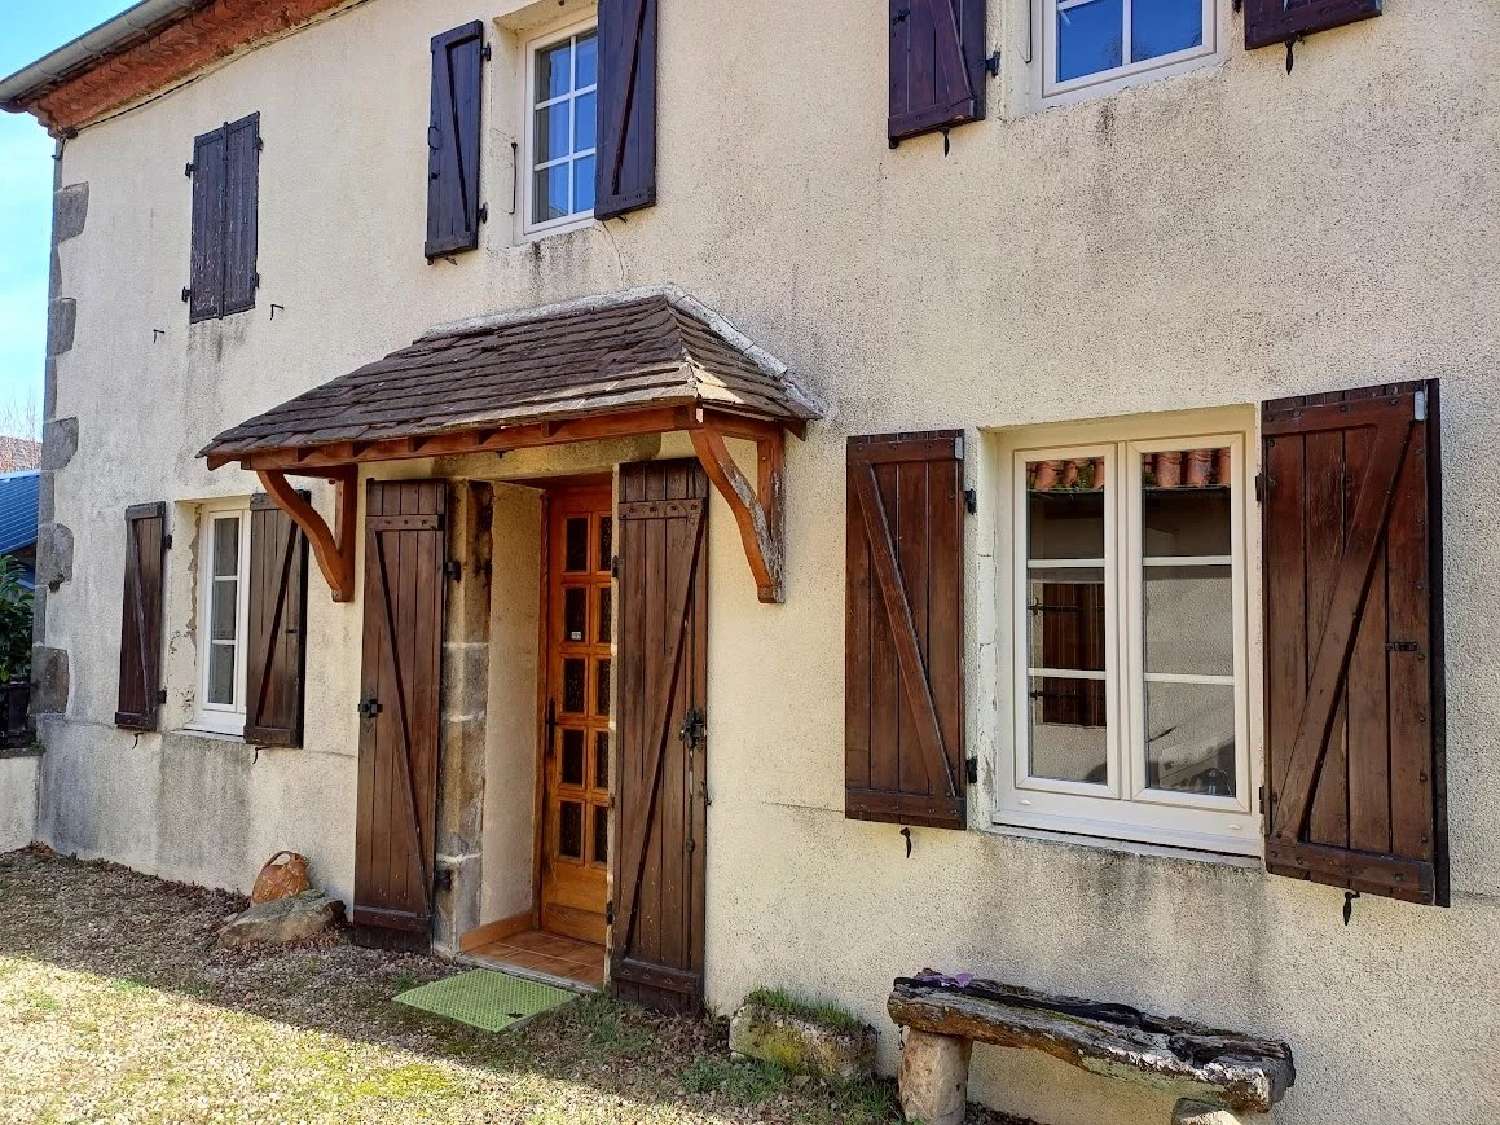 house for sale Saint-Éloy-les-Mines, Puy-de-Dôme ( Auvergne-Rhône-Alpes) picture 3